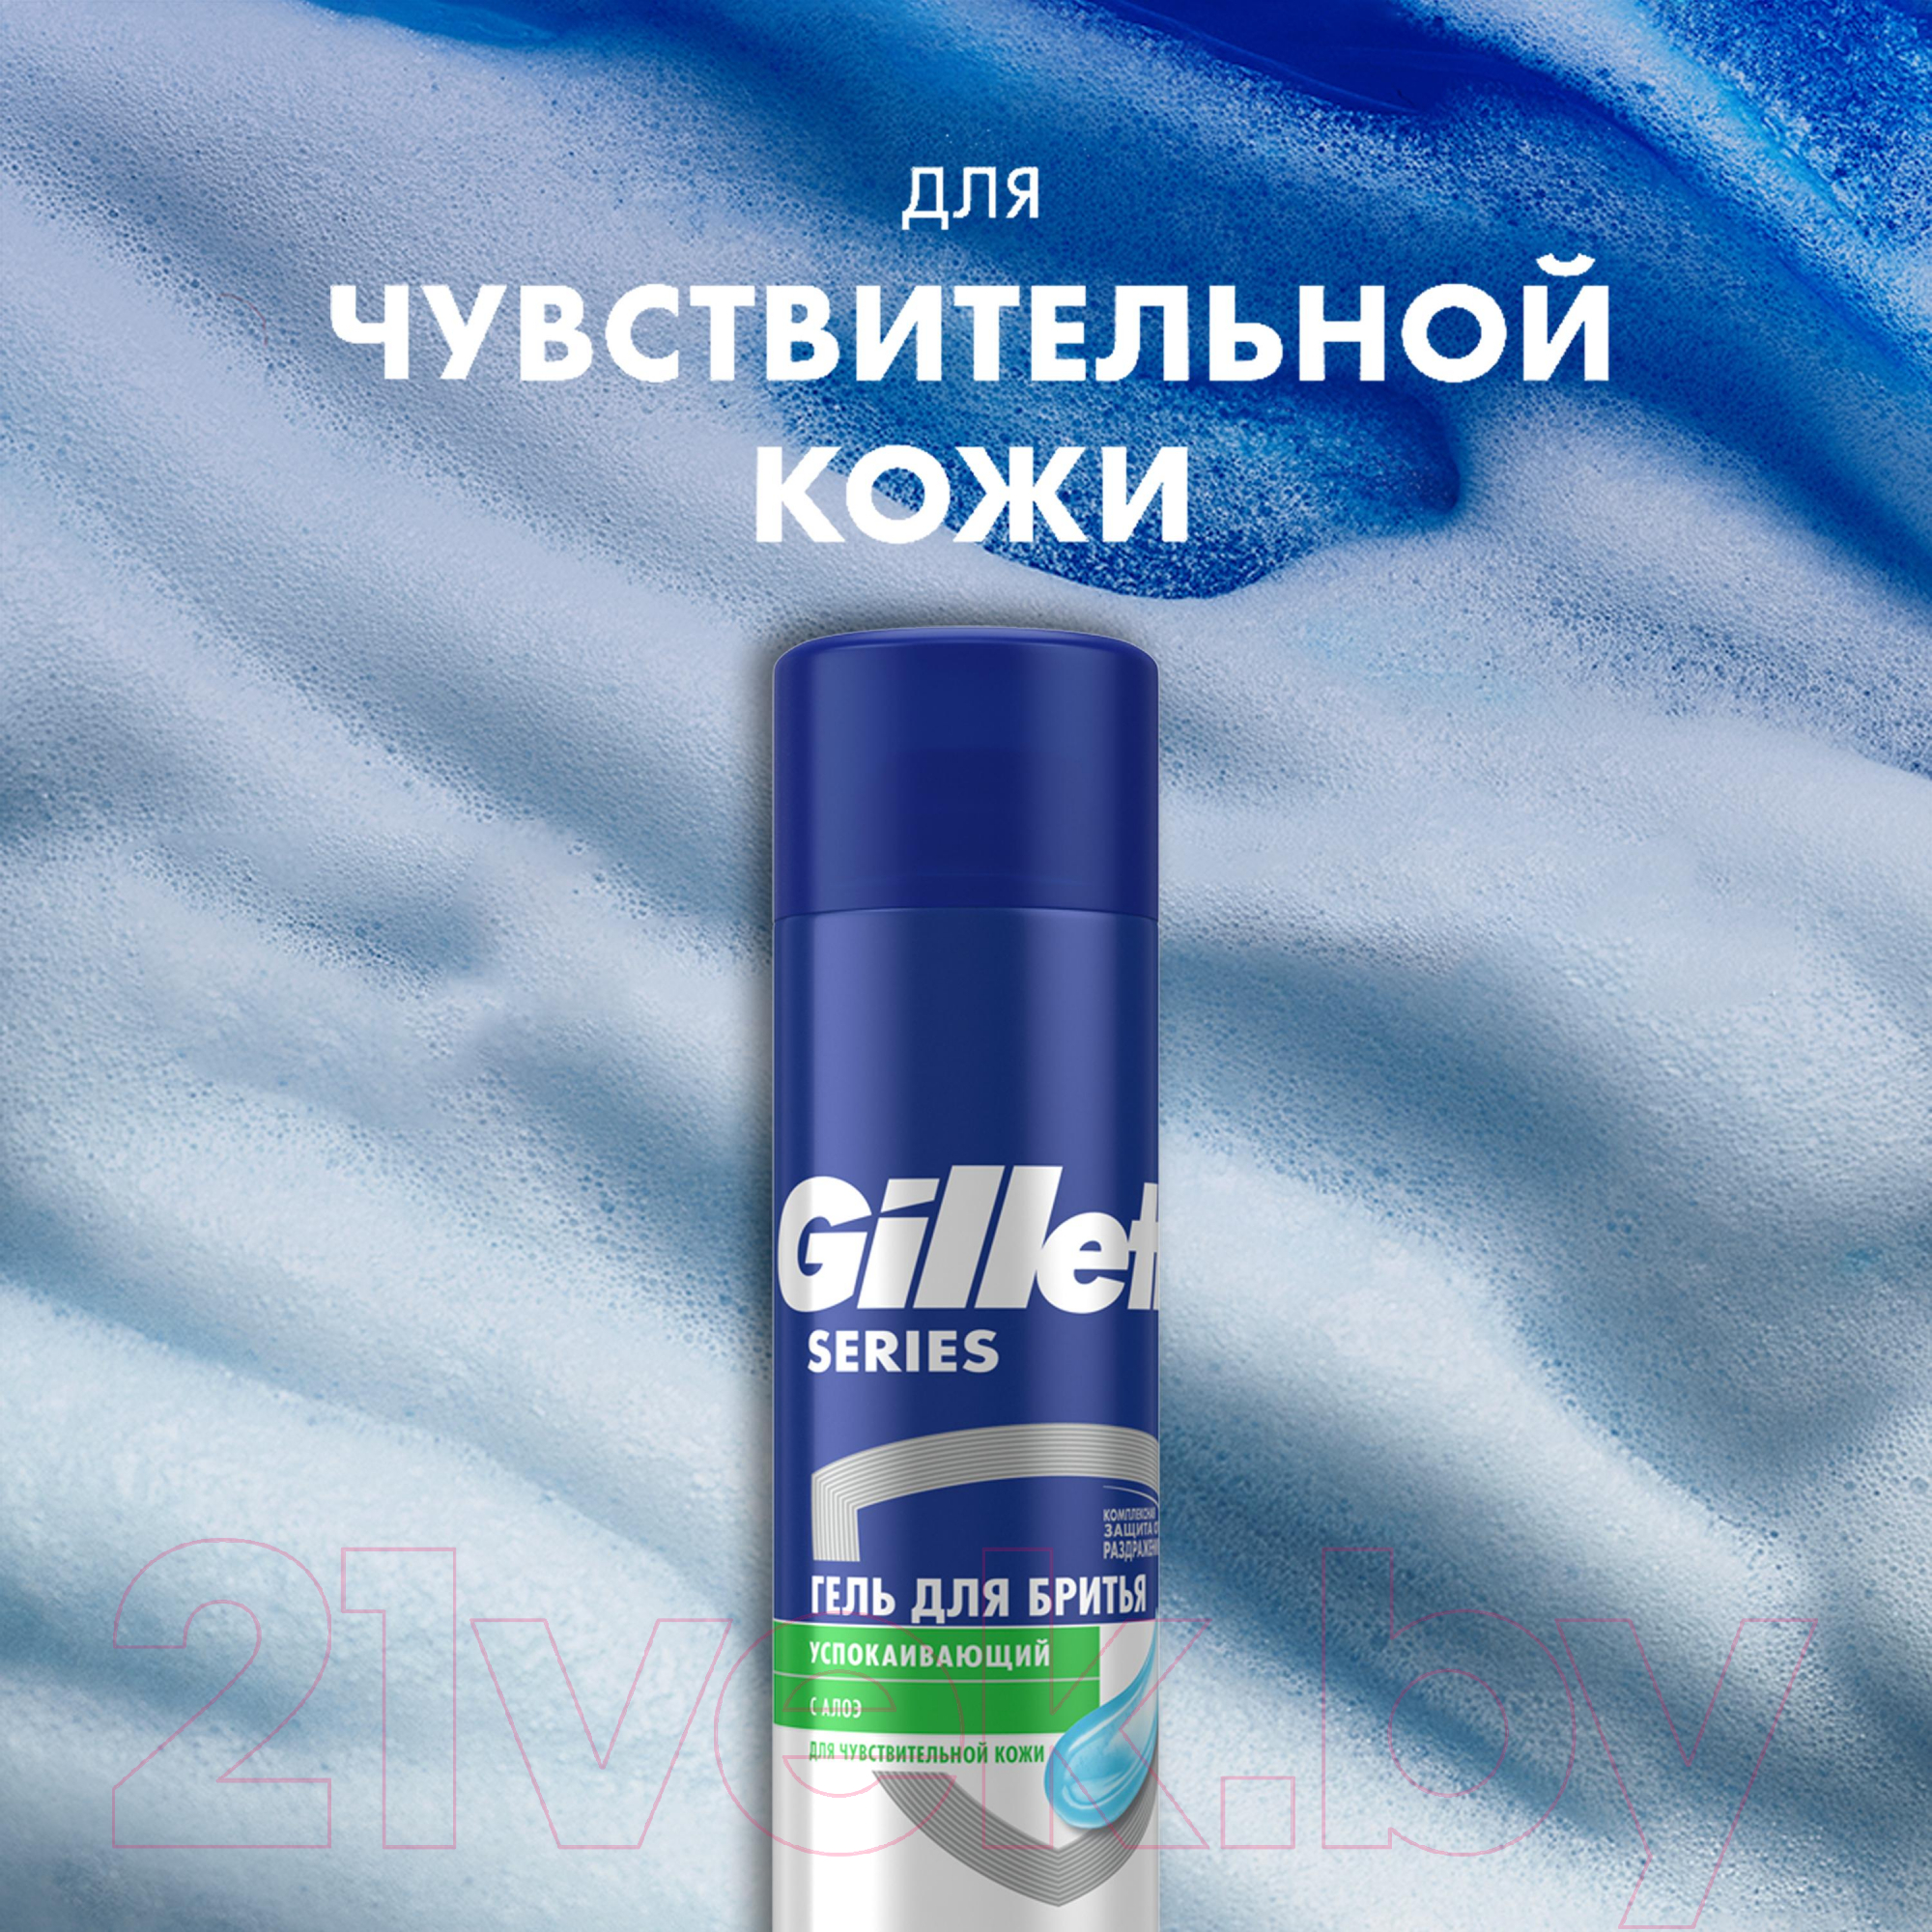 Набор для бритья Gillette Станок Fusion + Гель для бритья Алоэ